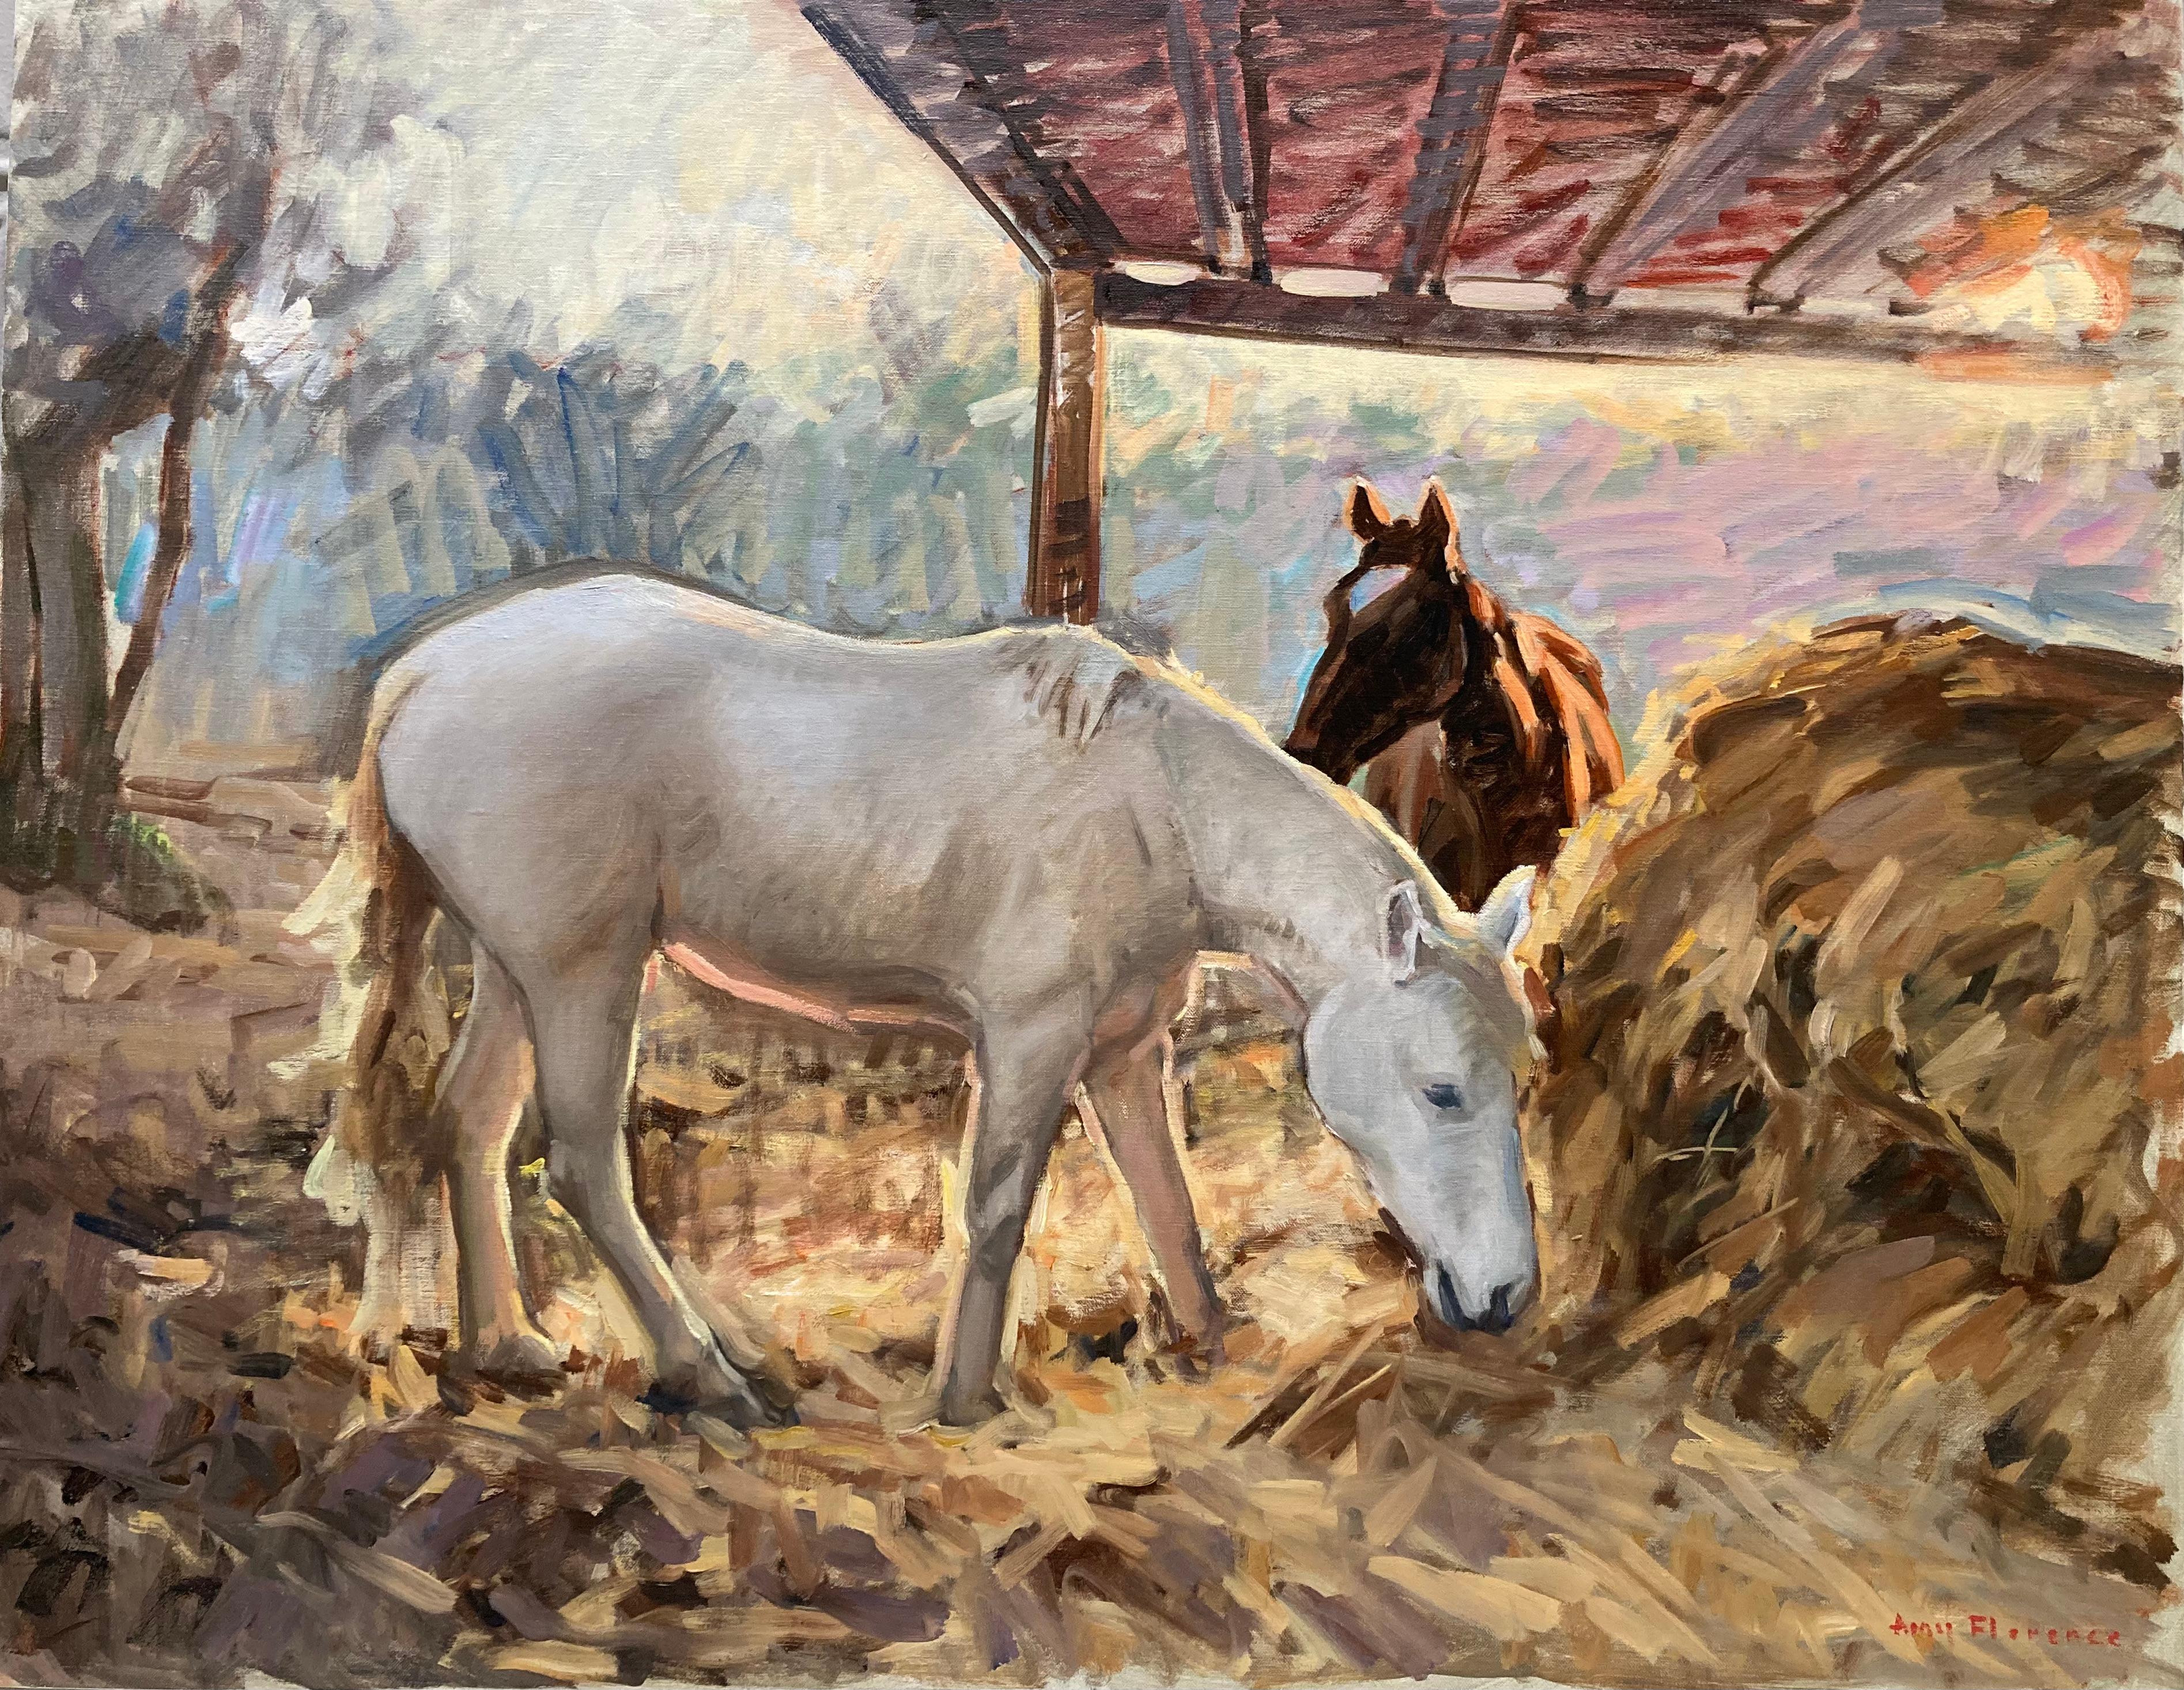 Animal Painting Amy Florence - "Cheval blanc au crépuscule, Toscane" peinture à l'huile pastorale impressionniste contemporaine.